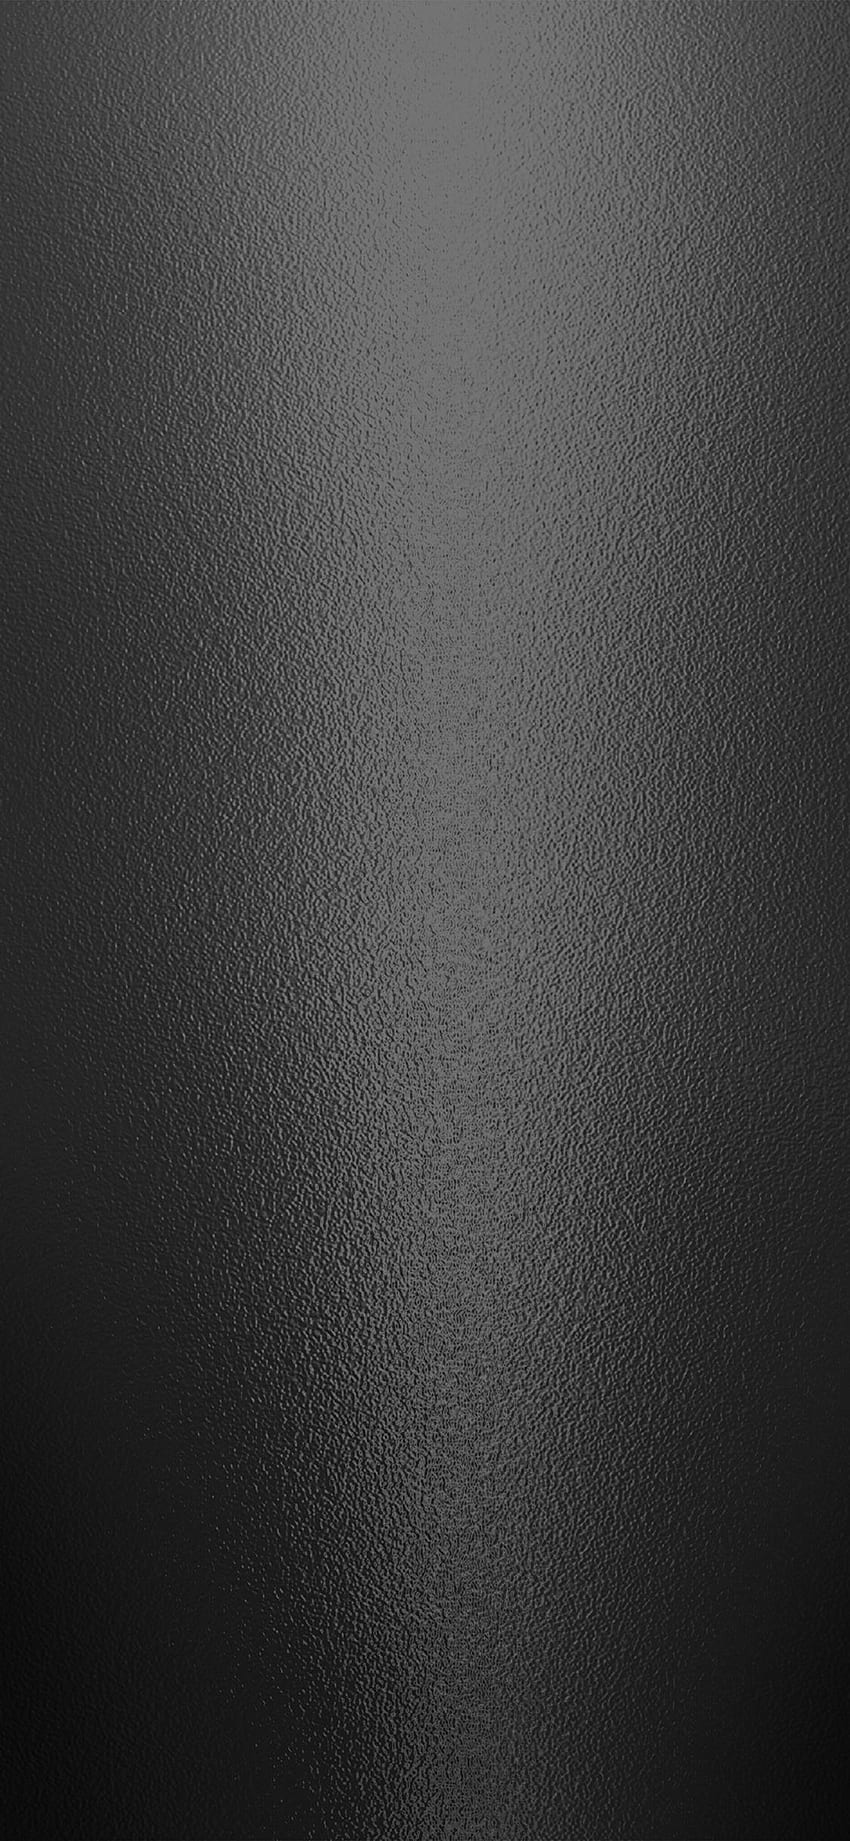 iPhone X。 テクスチャ ダーク ブラック メタル パターン、ブラック ブラッシュド アルミニウム HD電話の壁紙